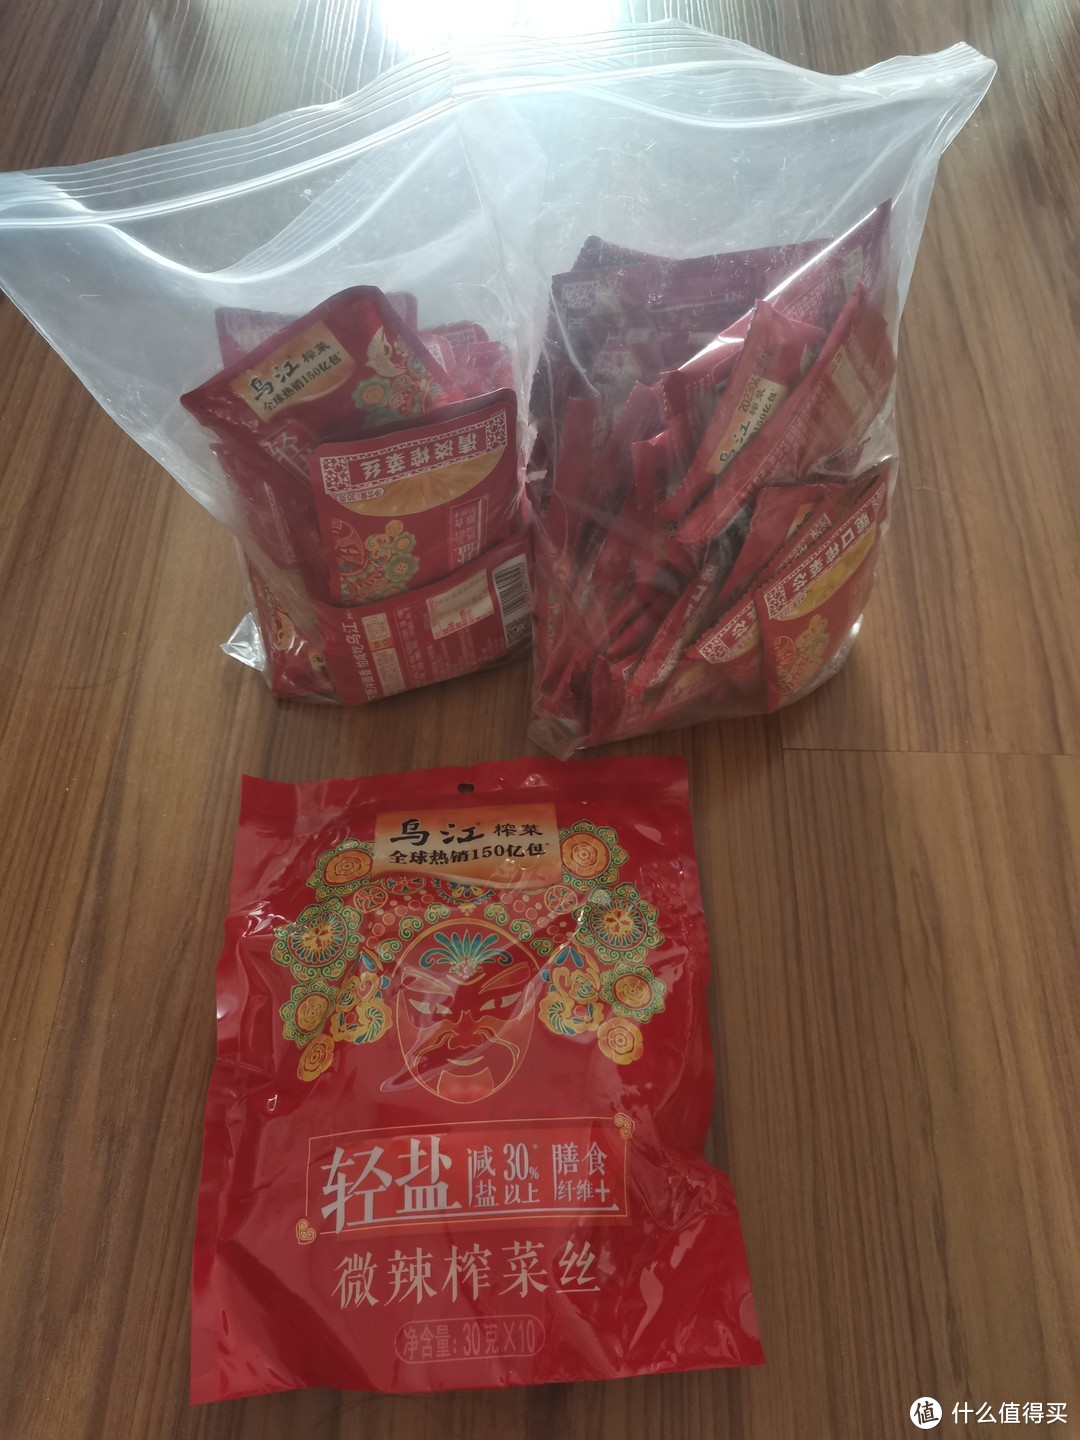 关于我买了520包乌江榨菜，和如何食用这件事